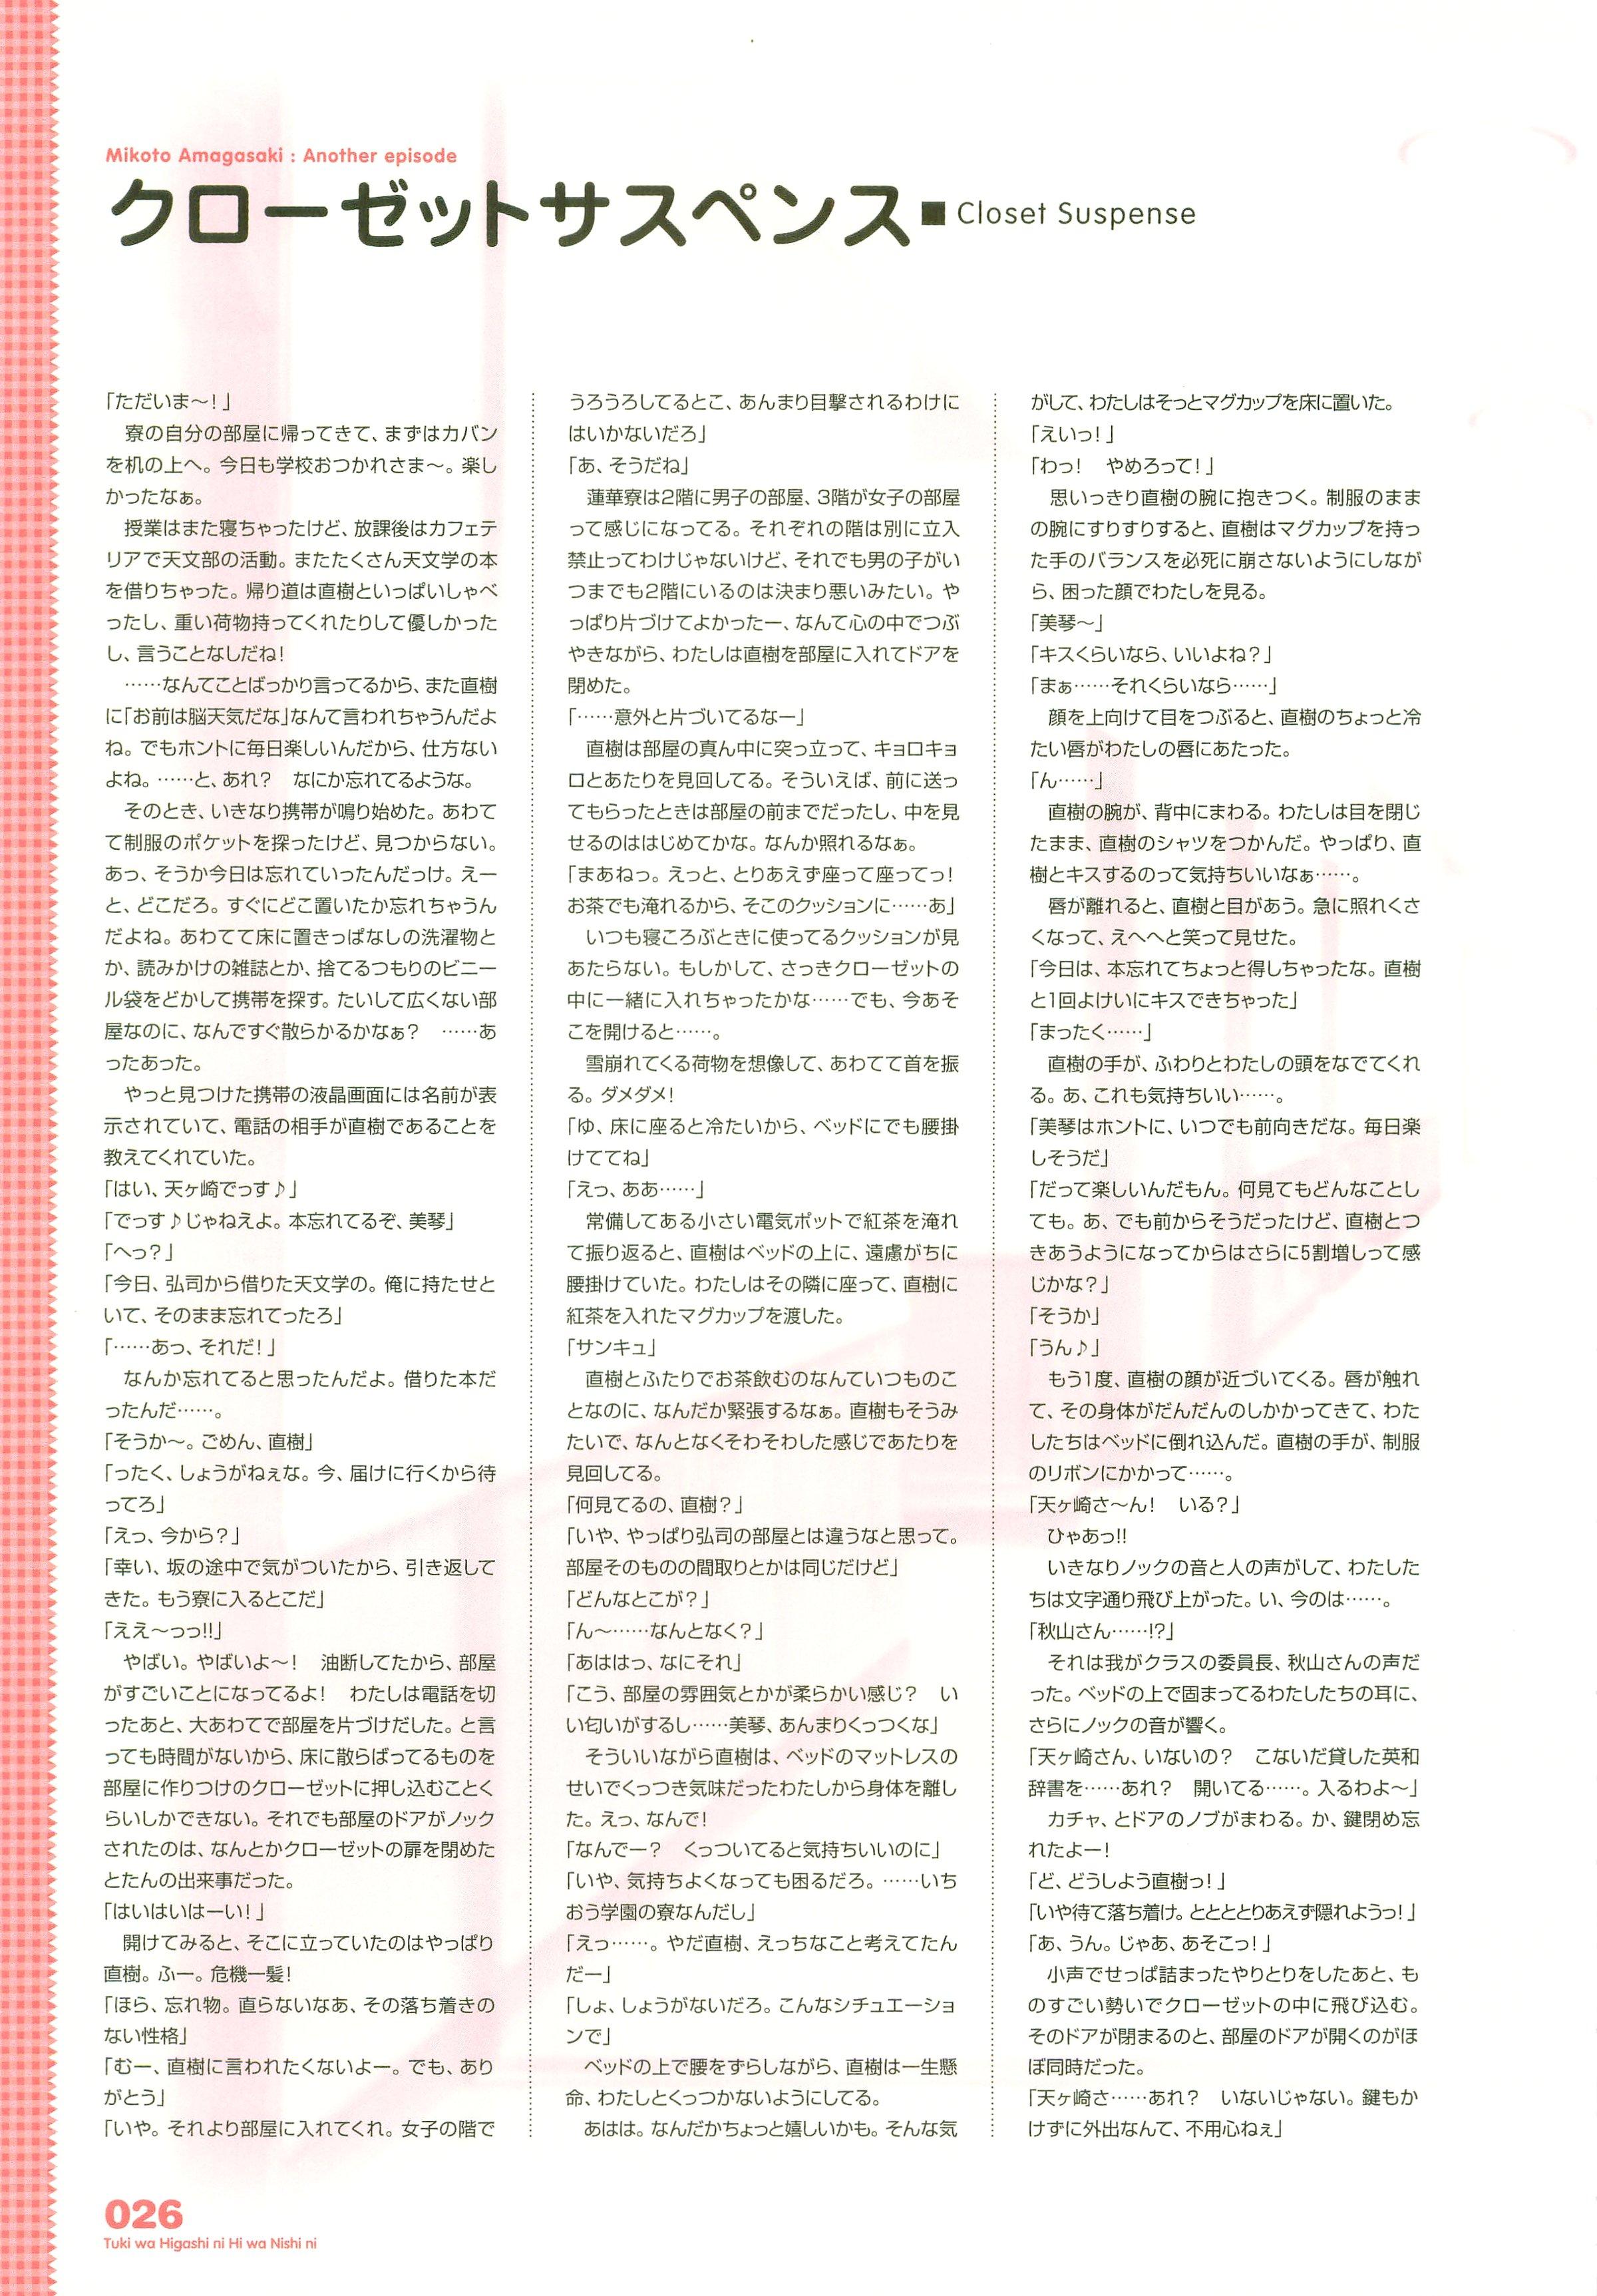 Tsuki wa Higashi ni Hi wa Nishi ni ～ Operation Sanctuary ～ Visual Fan Book 37